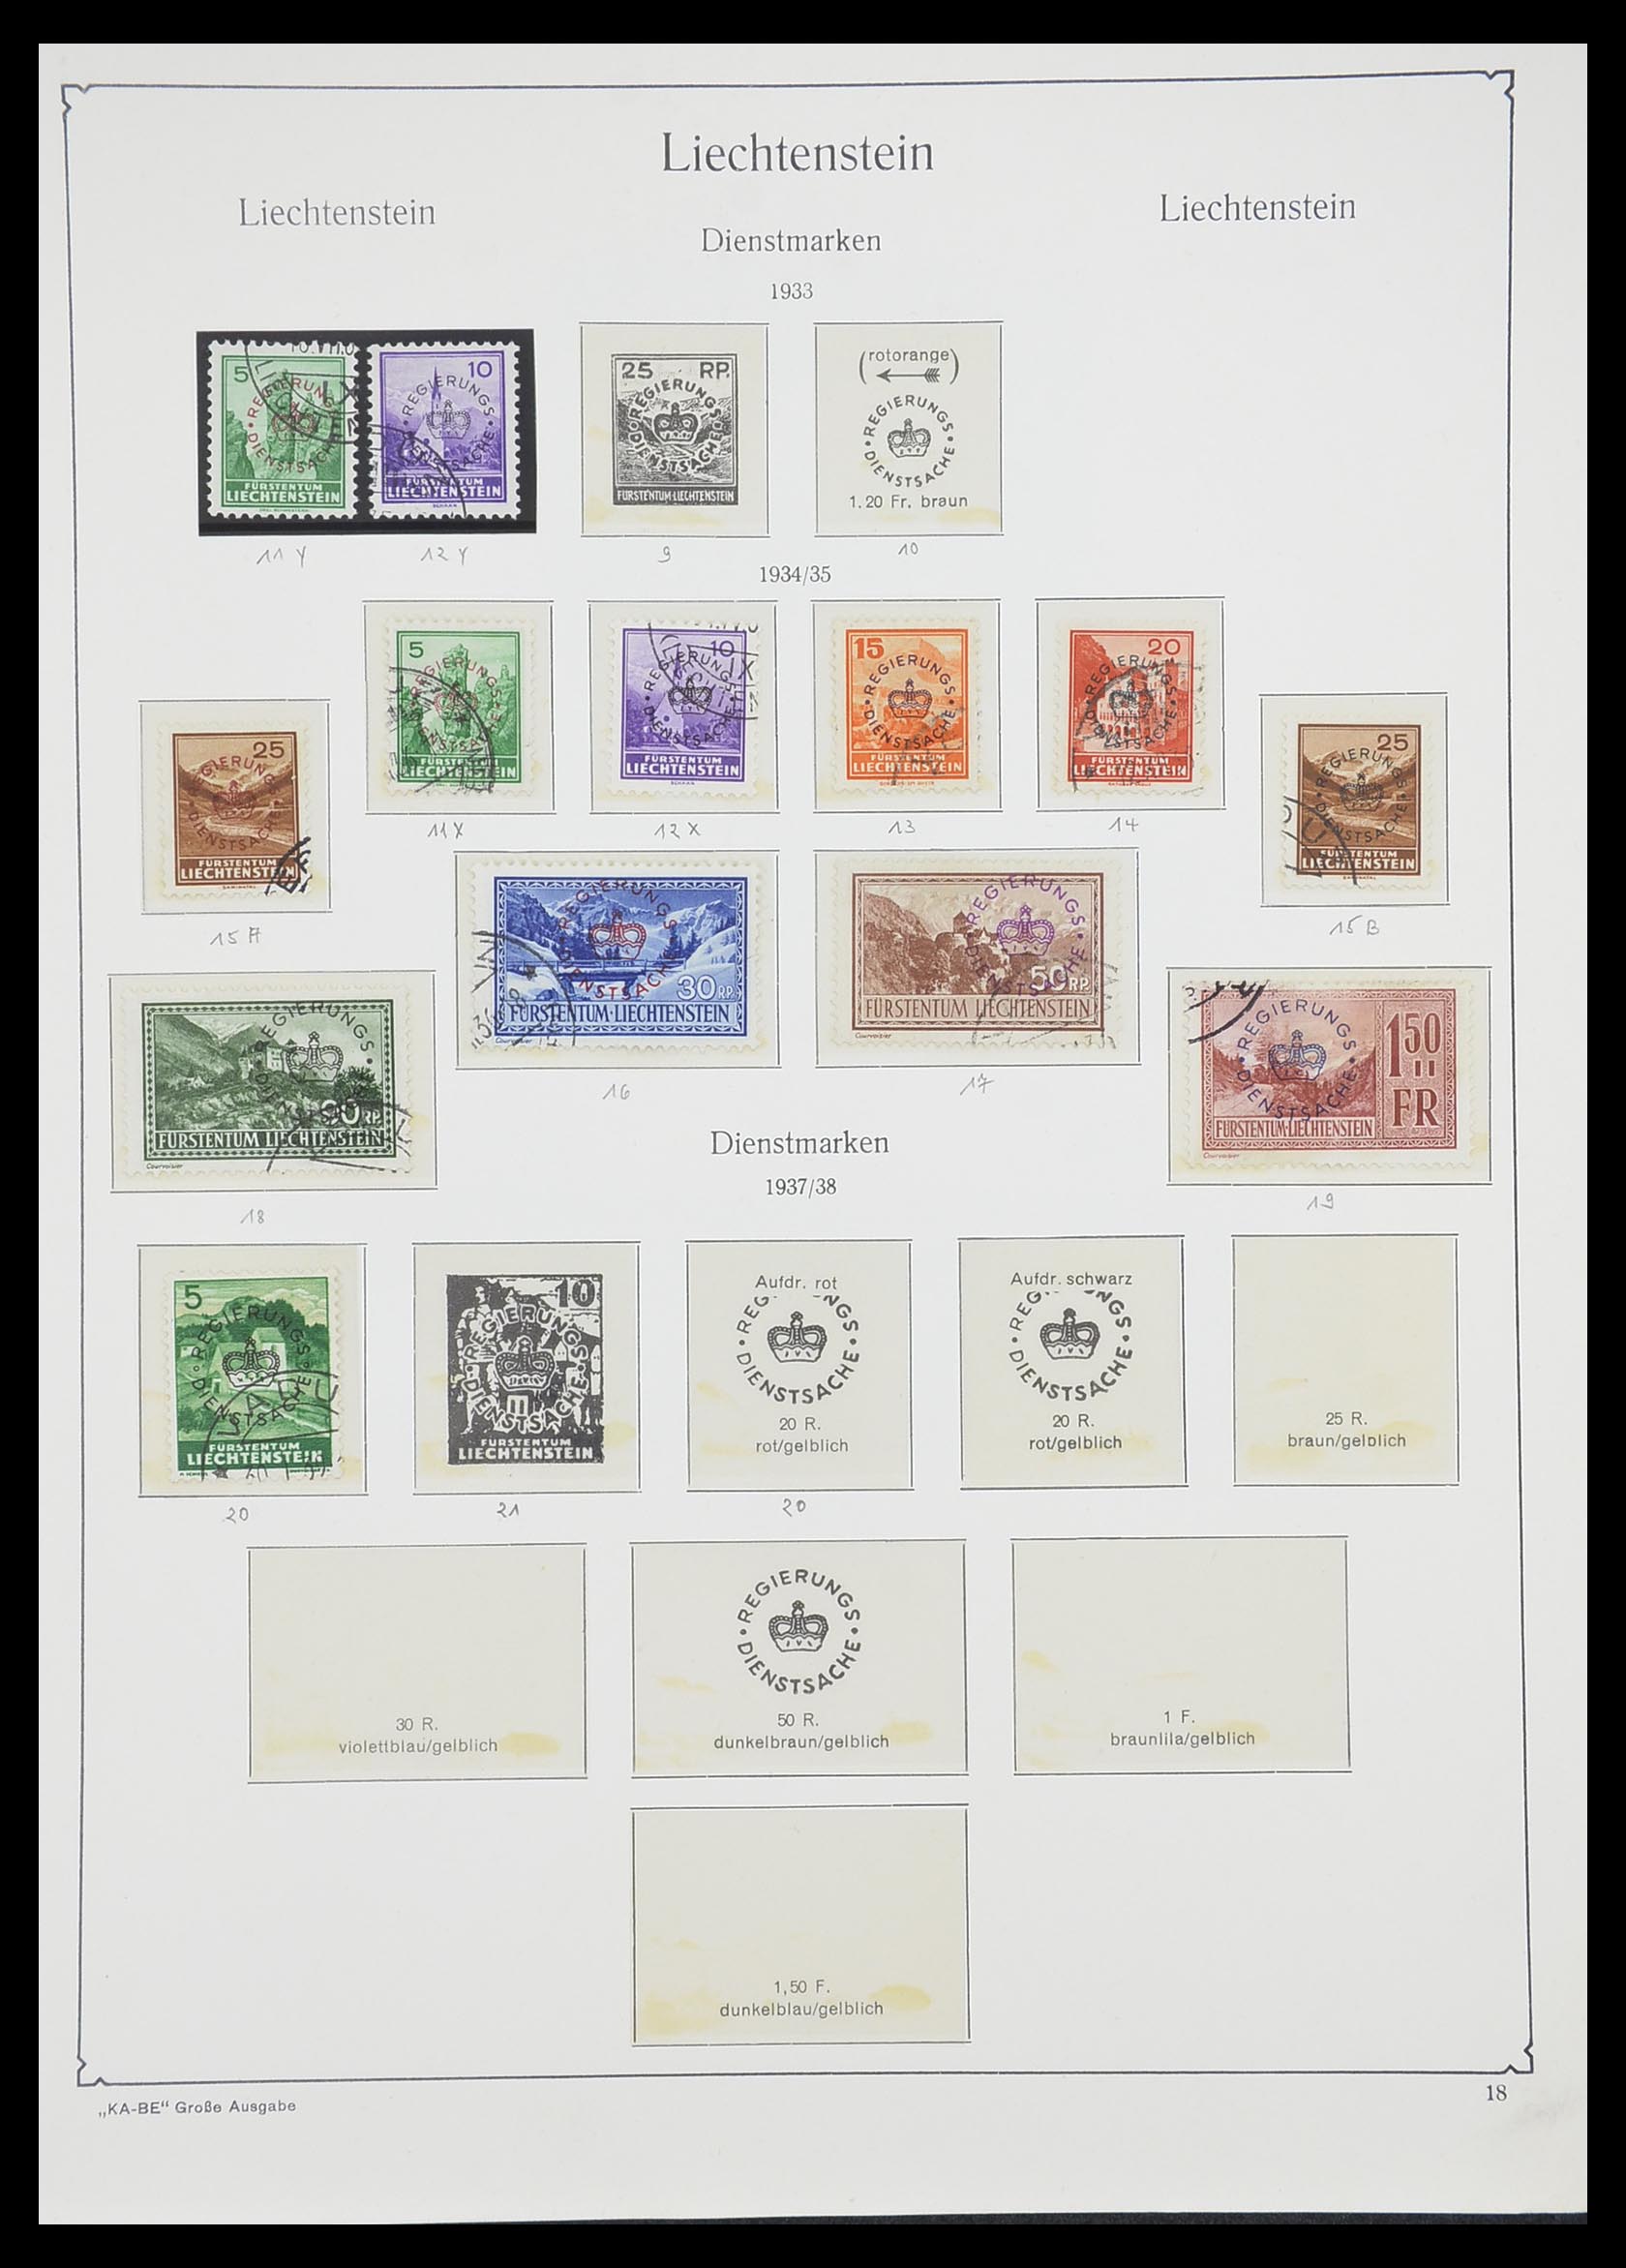 33493 019 - Stamp collection 33493 Liechtenstein 1912-2008.